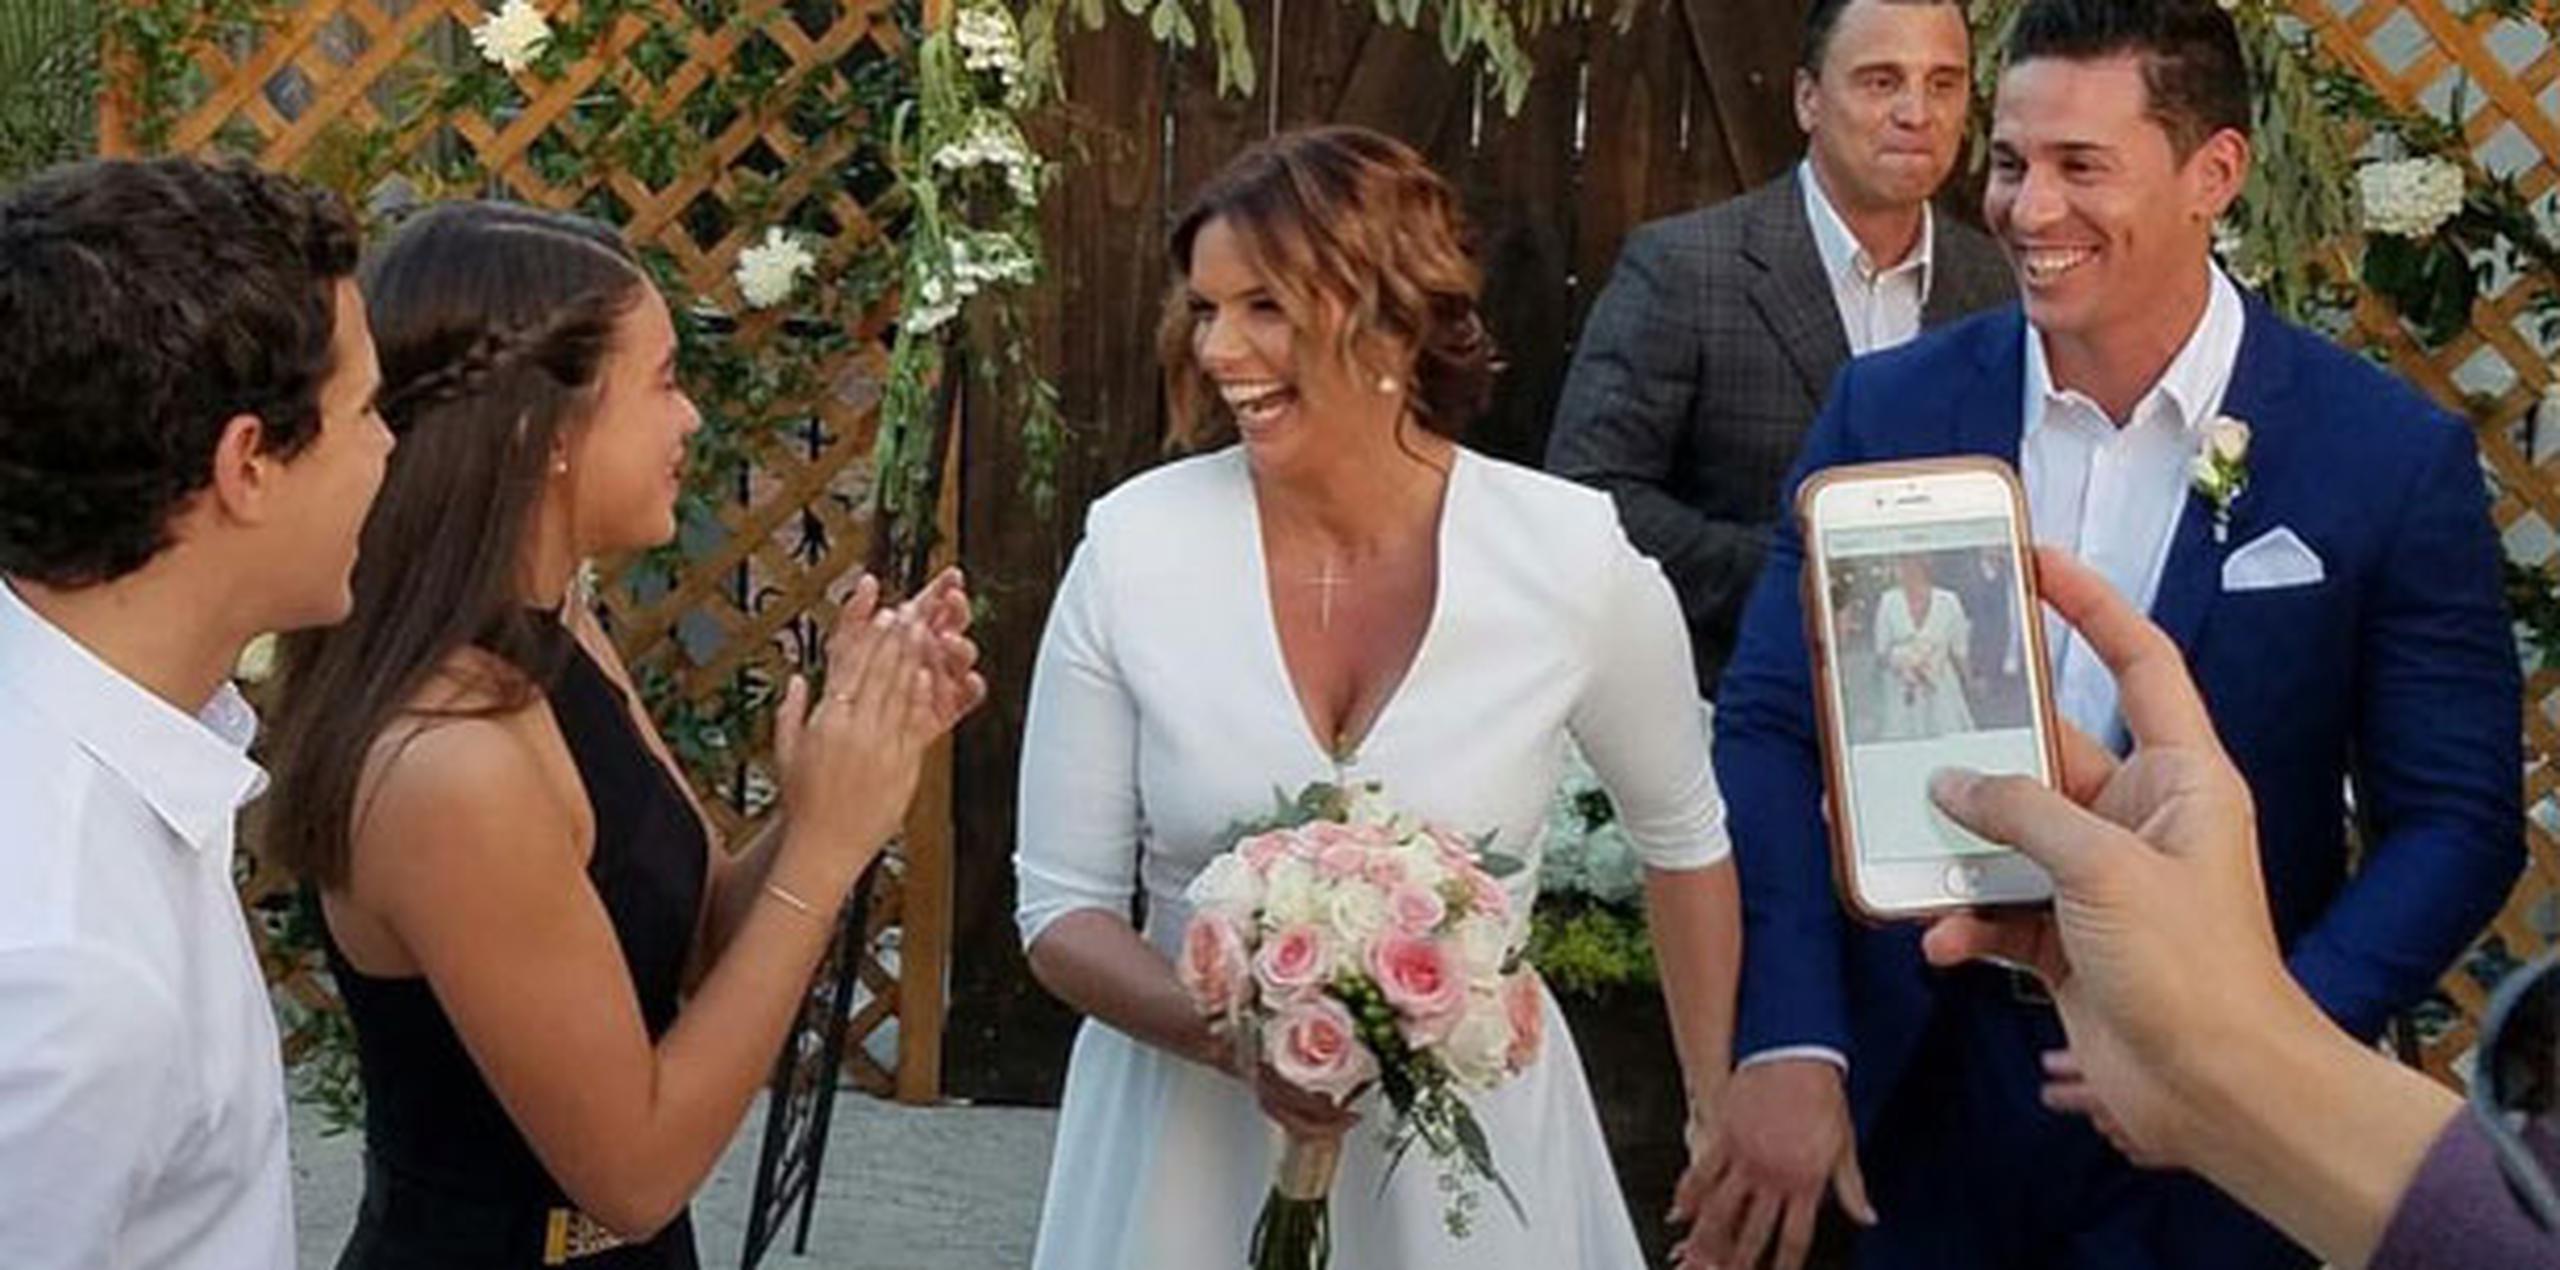 Díaz y Carlos Delgado se casaron en una íntima ceremonia civil, a la que fueron invitados sus familiares y amigos más cercanos.